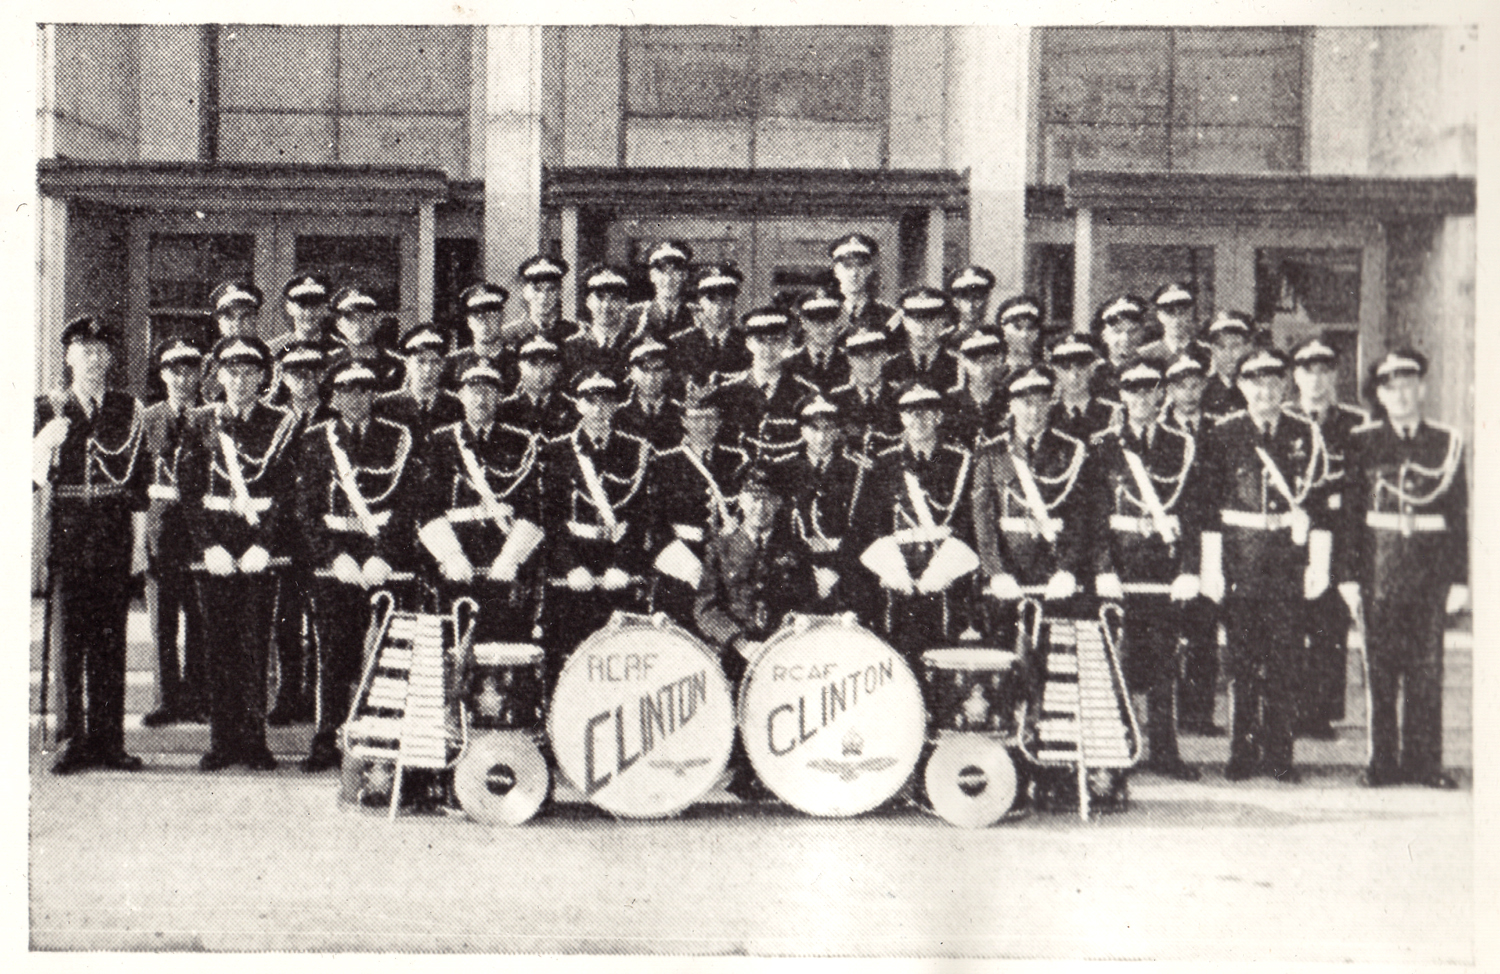 Clinton Band, Clinton RCAF Base, 1956